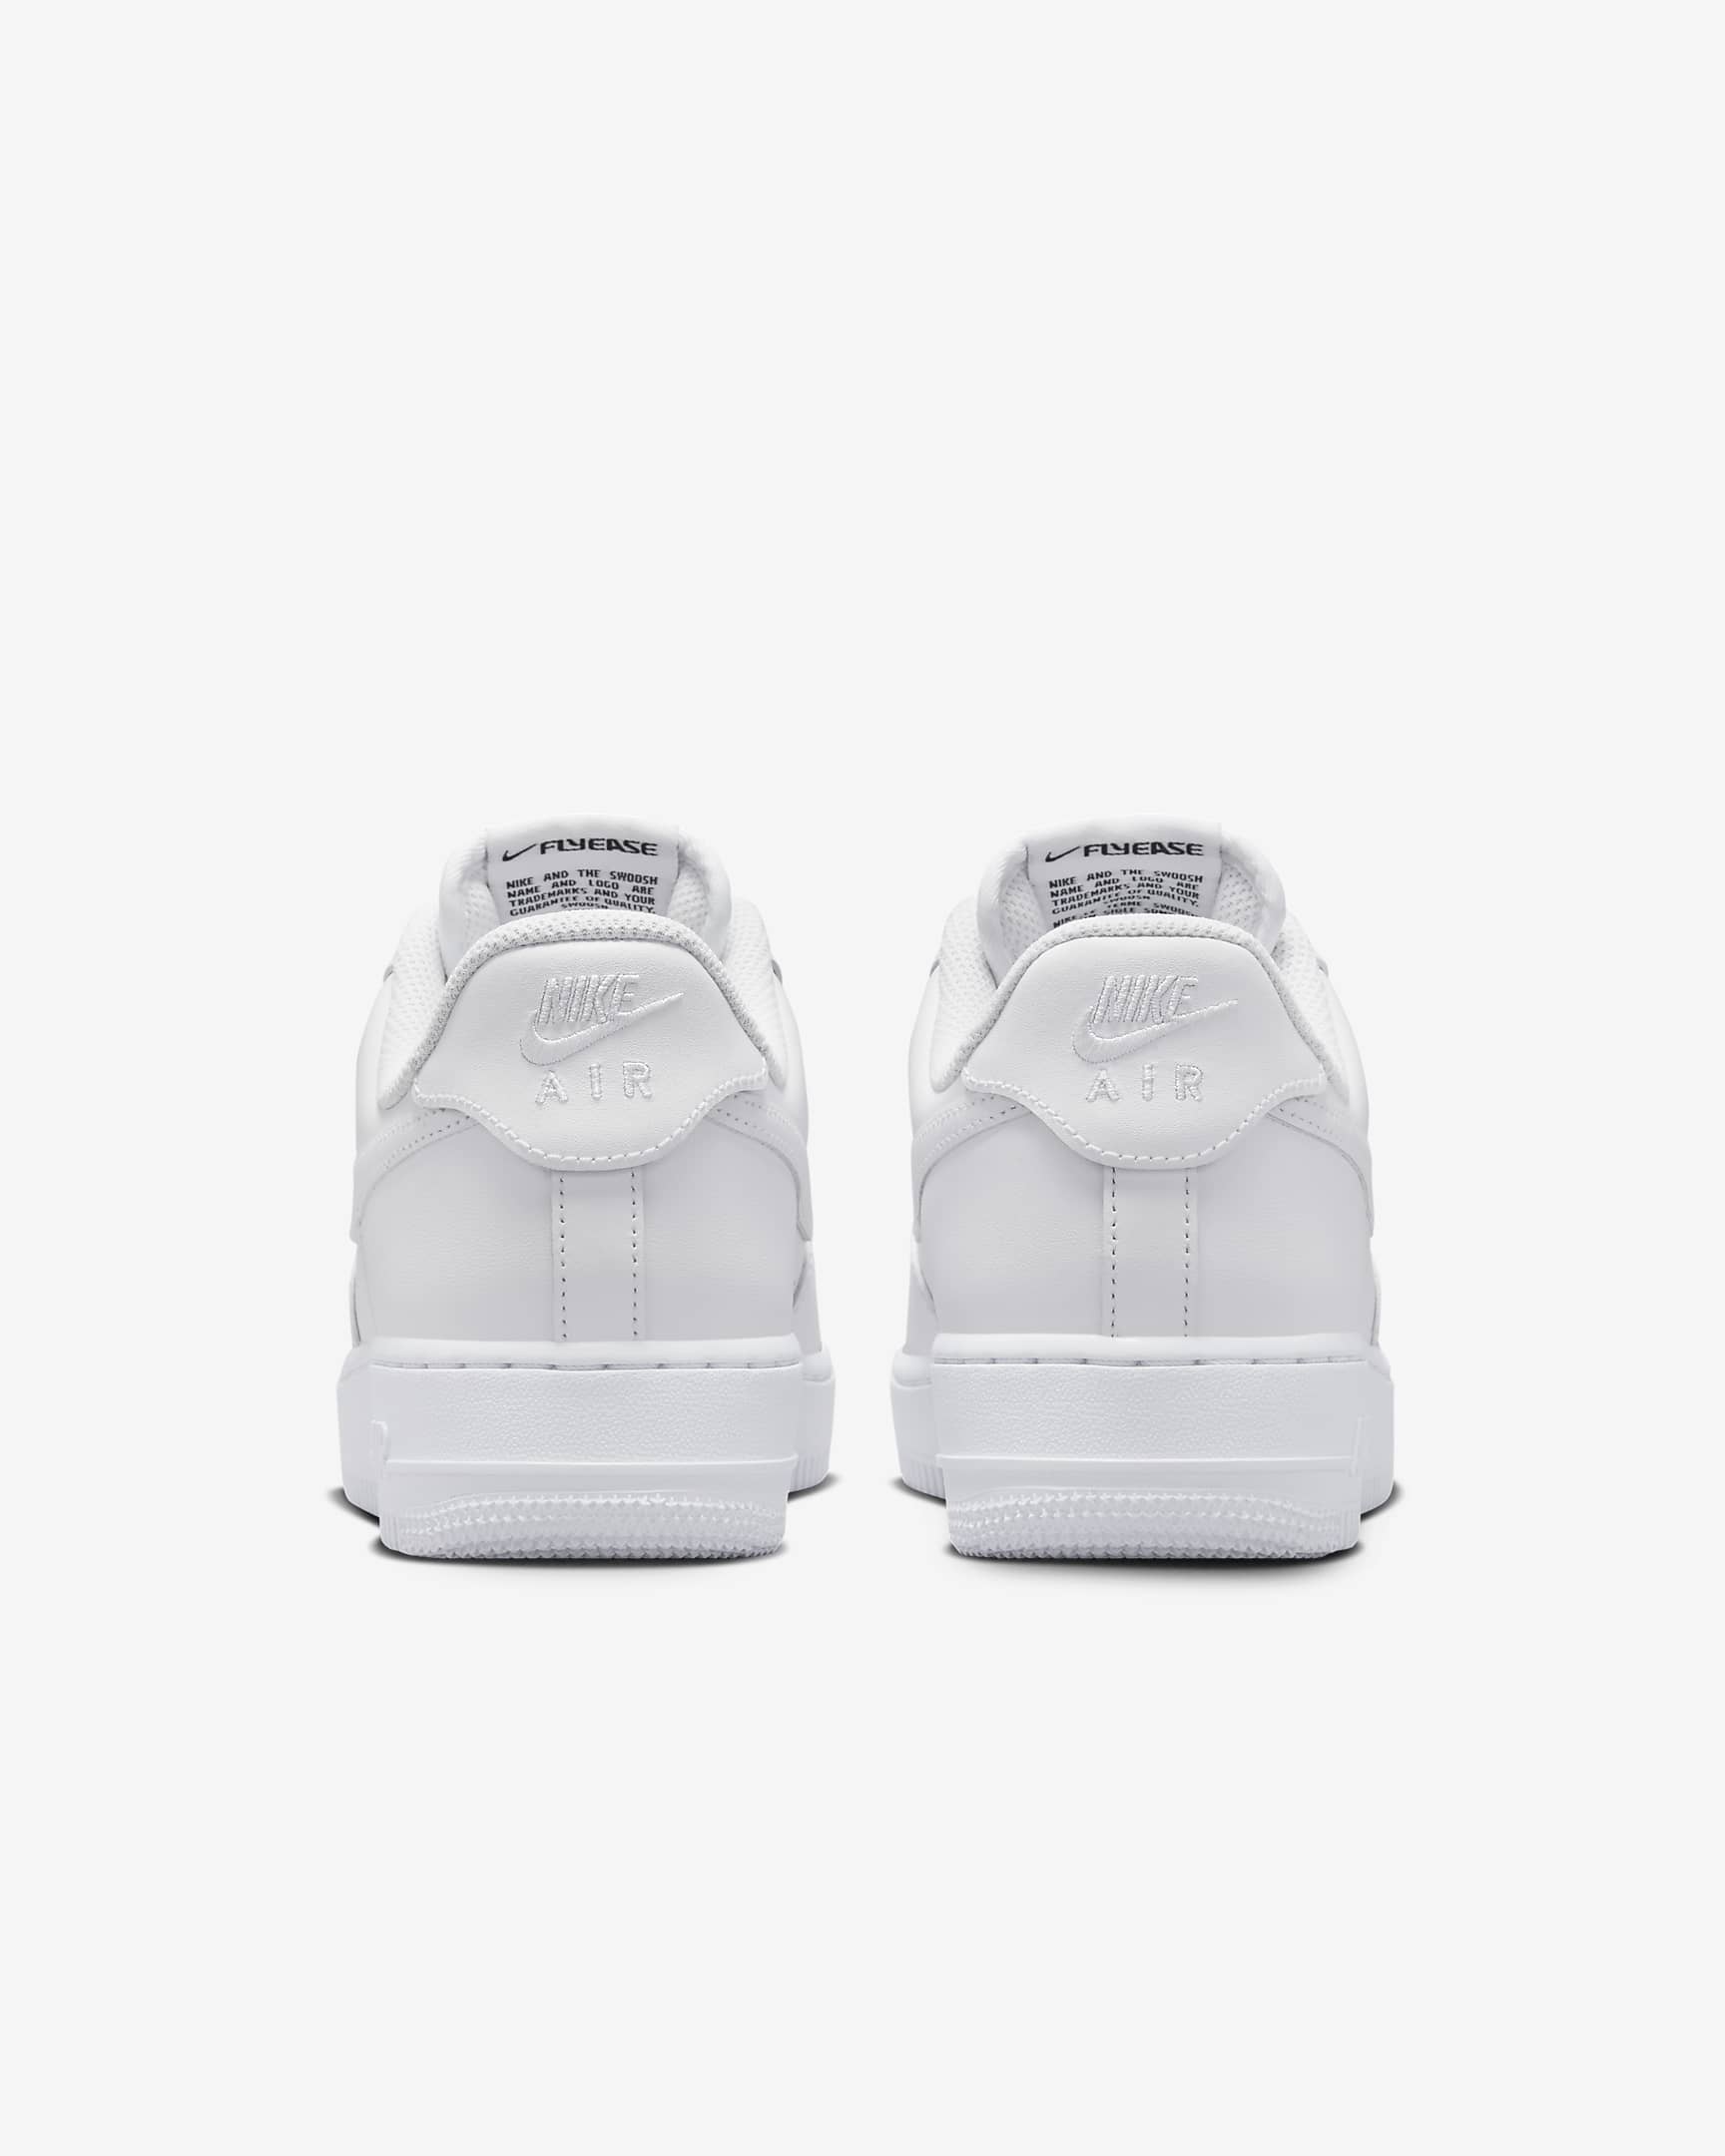 Nike Air Force 1 '07 EasyOn Women's Shoes - White/White/White